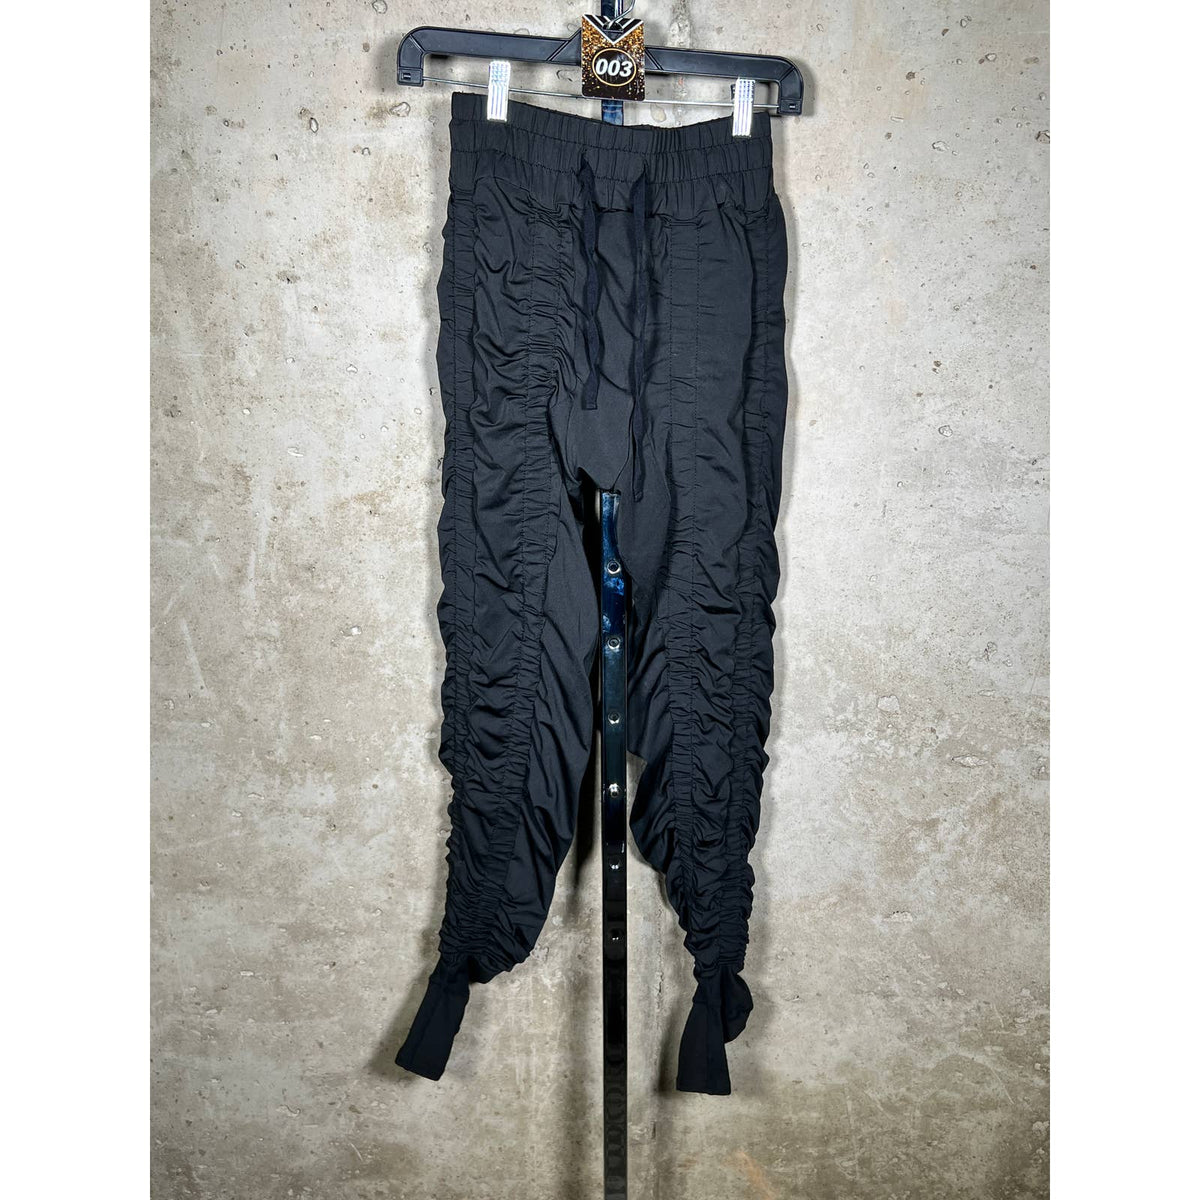 Agogie Wearable Resistance Pants+20 Black Runched Pants Sz. Large